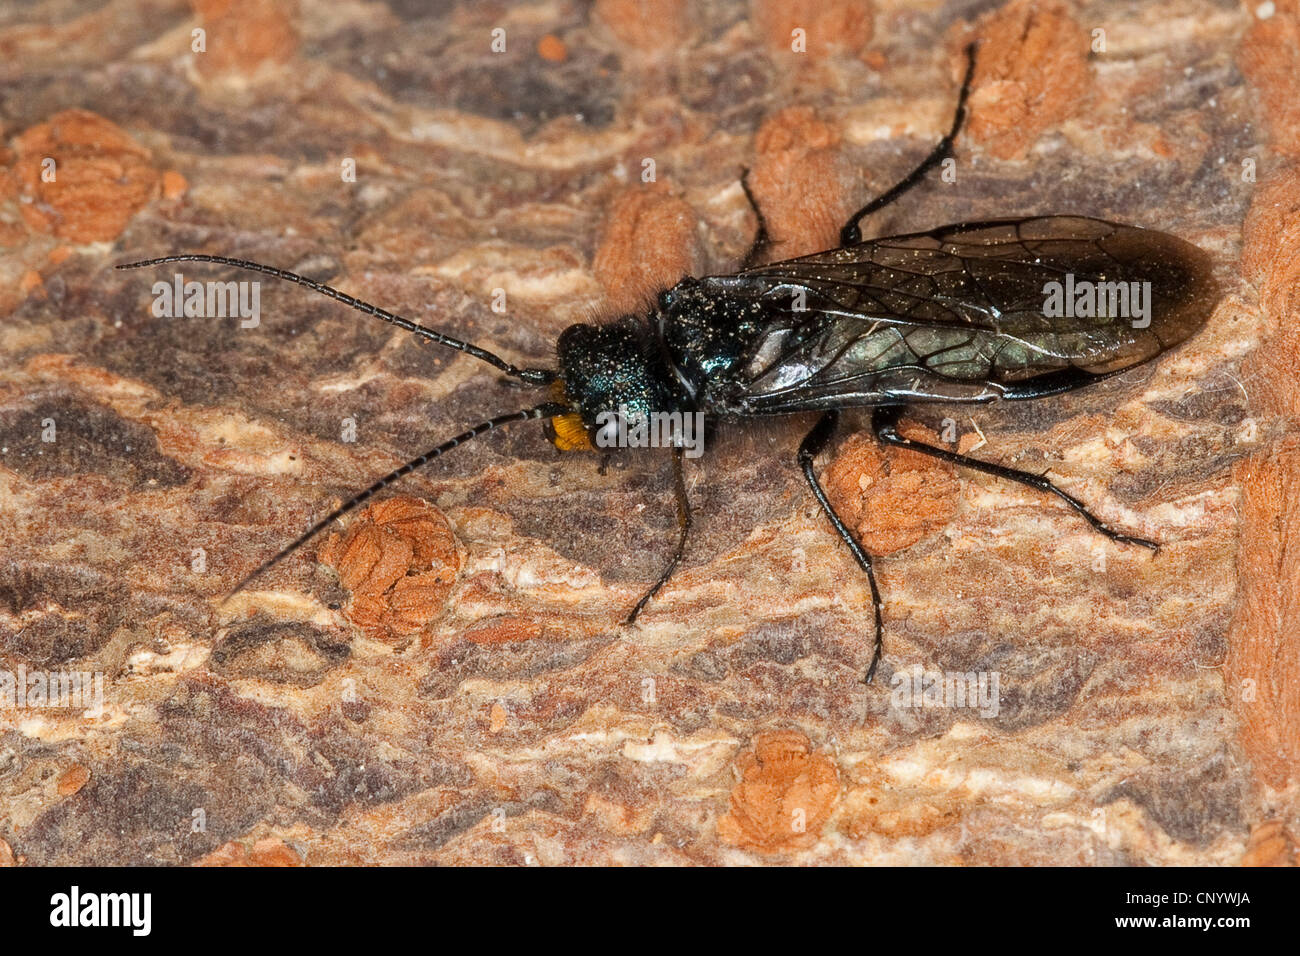 Pine false webworm (Acantholyda erythrocephala, Acantholyda flaviceps), male sitting on bark, Germany Stock Photo